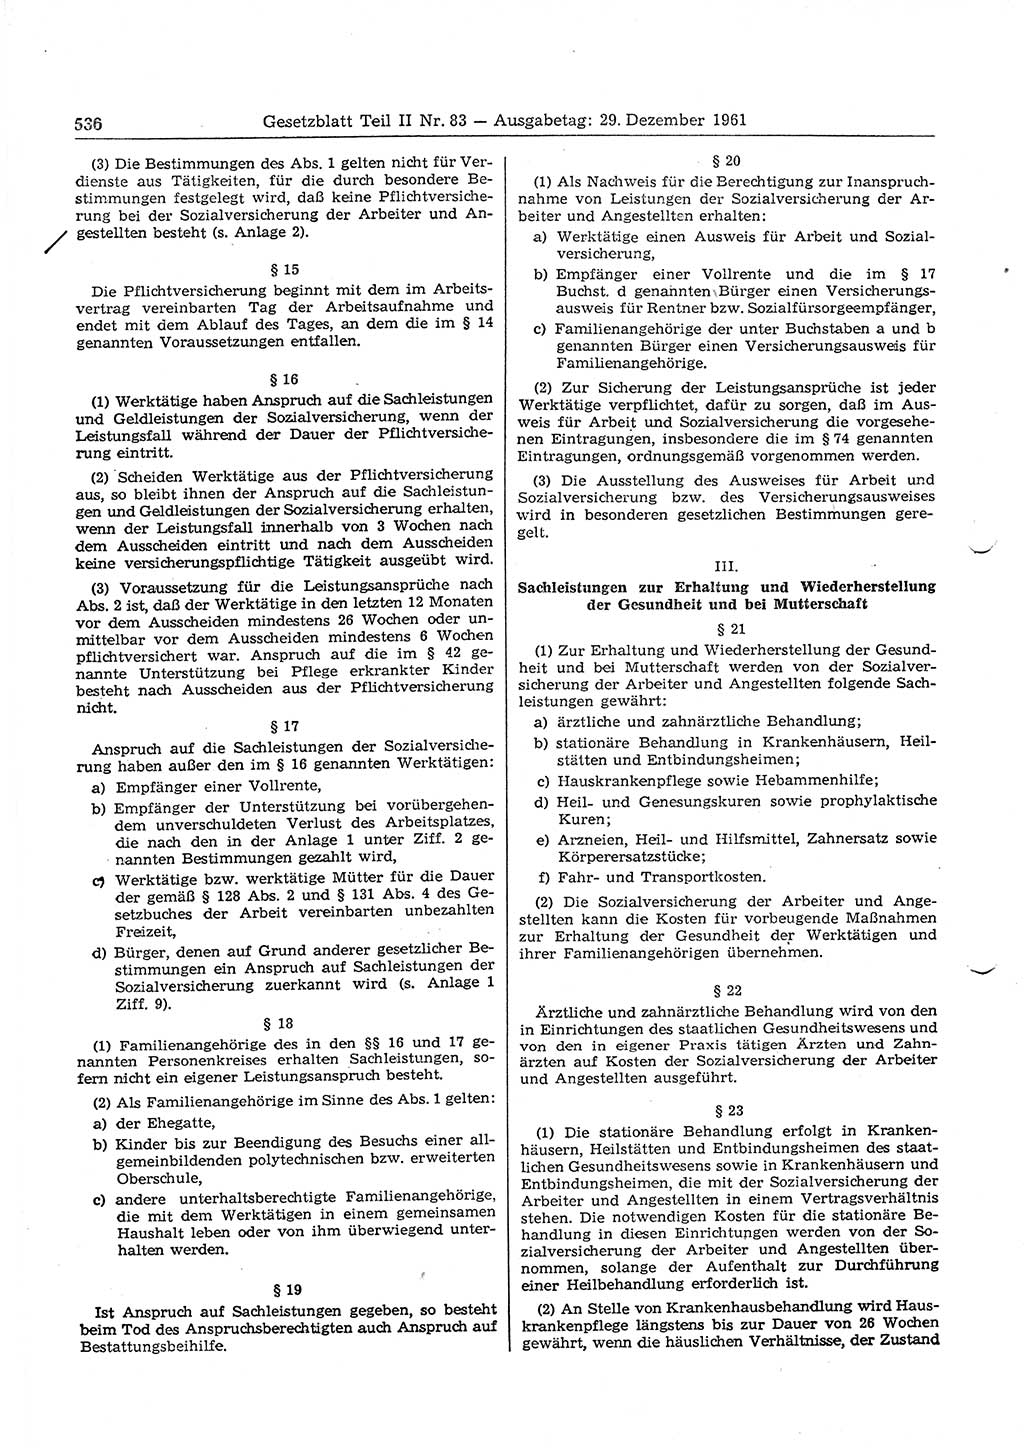 Gesetzblatt (GBl.) der Deutschen Demokratischen Republik (DDR) Teil ⅠⅠ 1961, Seite 536 (GBl. DDR ⅠⅠ 1961, S. 536)